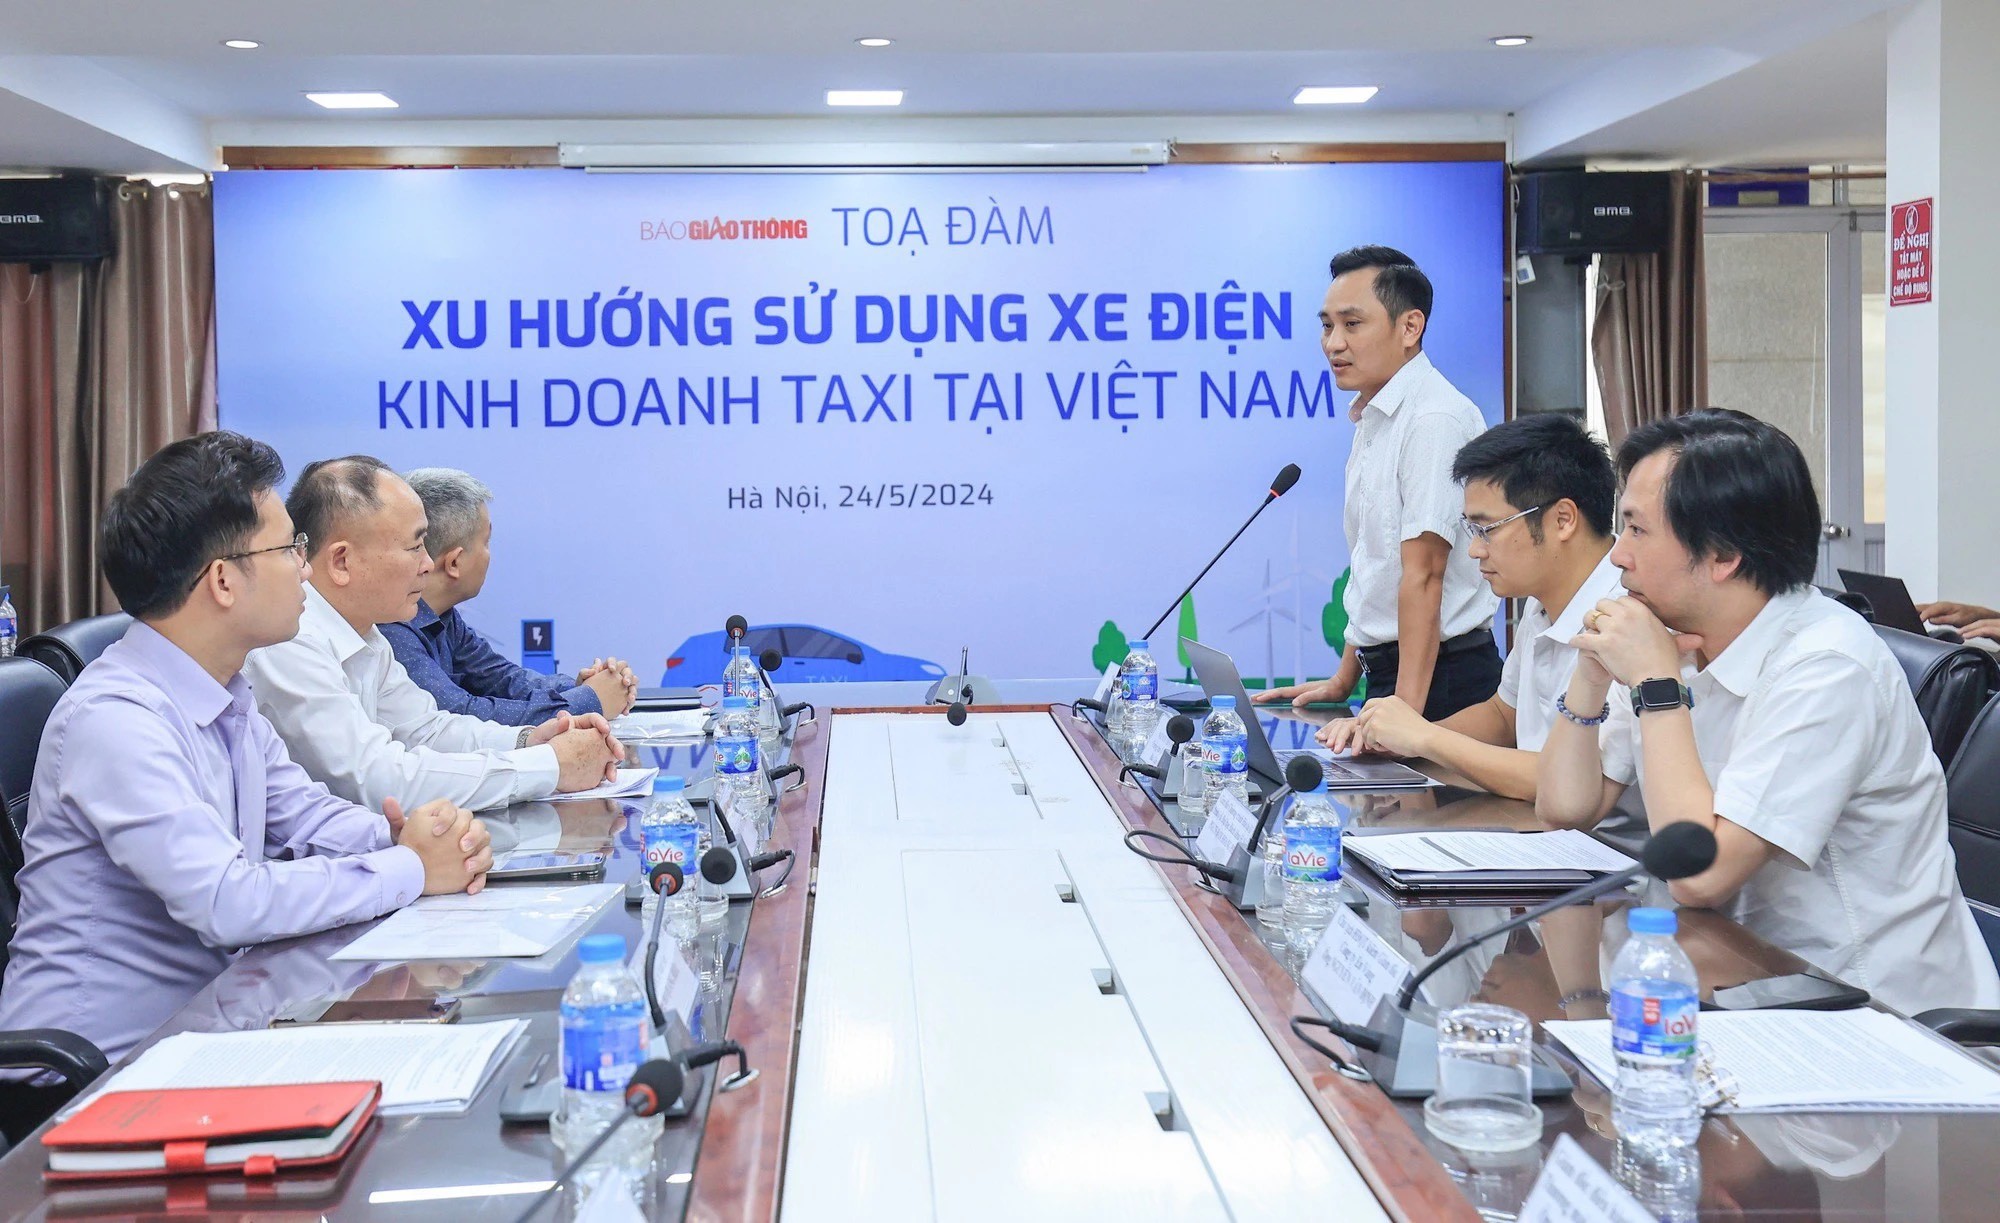 Xu hướng sử dụng xe điện kinh doanh taxi tại Việt Nam